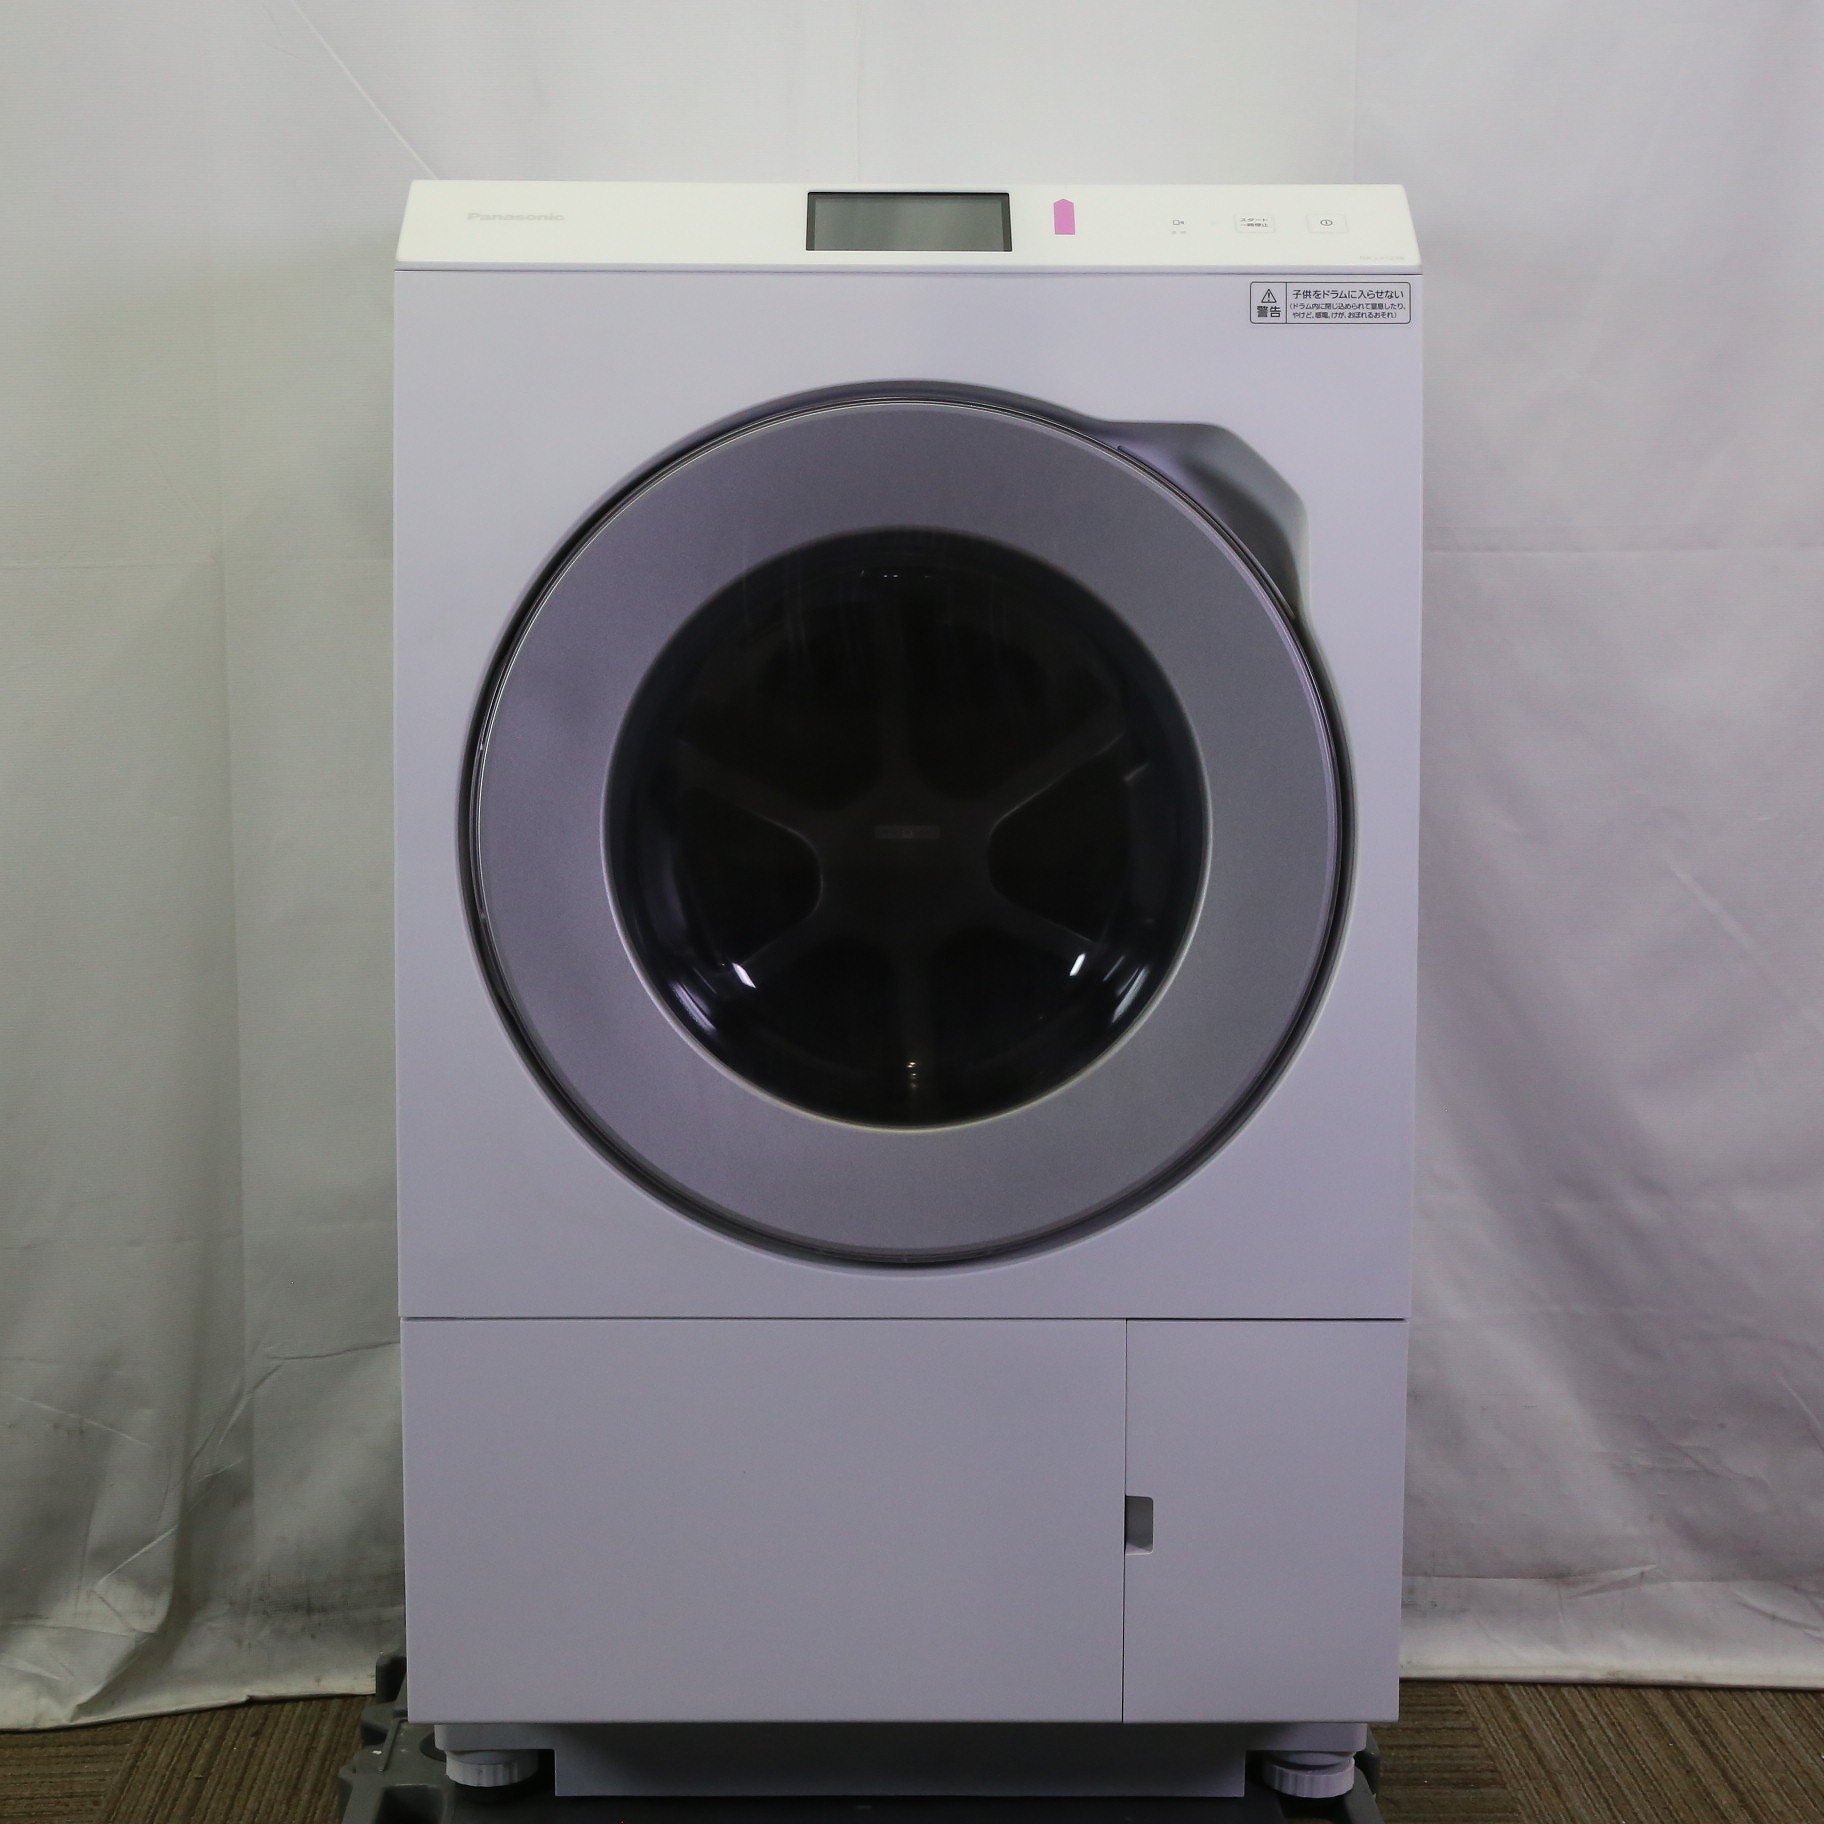 パナソニック Panasonic ドラム式洗濯乾燥機 LXシリーズ 洗濯12.0kg